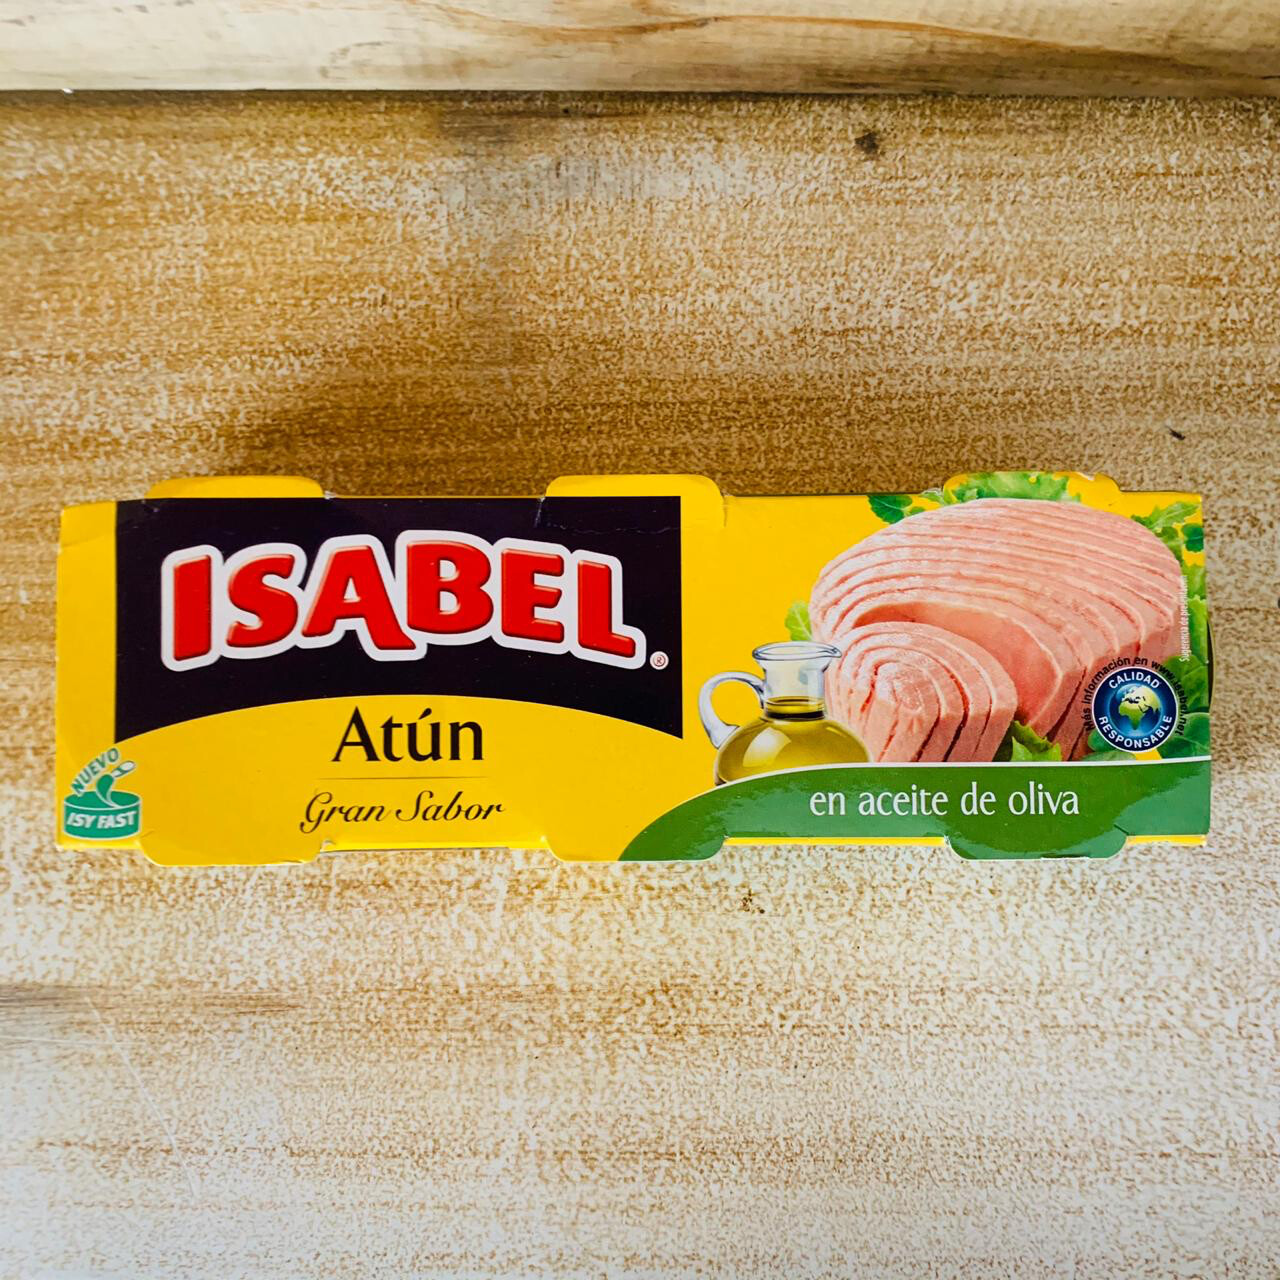 Isabel Atun (tuna)